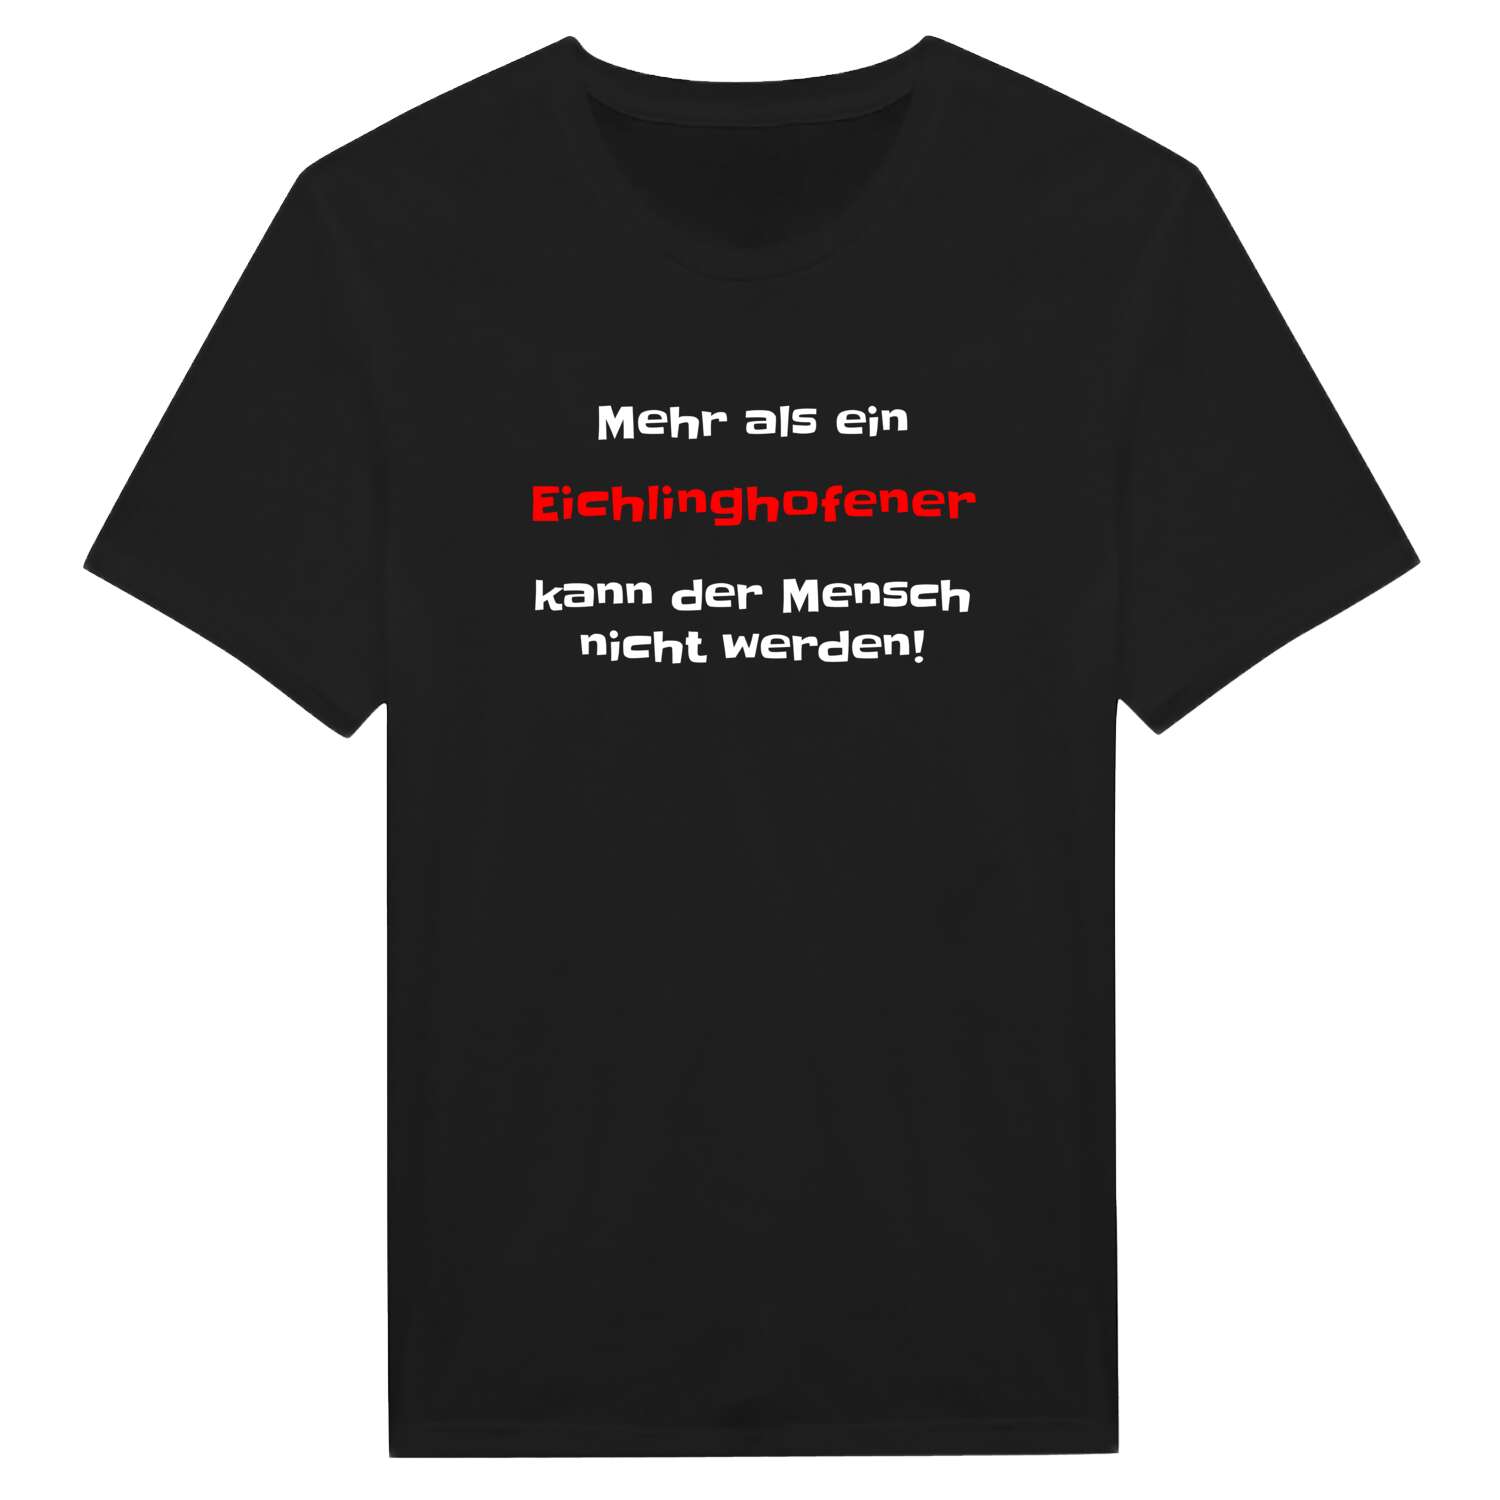 Eichlinghofen T-Shirt »Mehr als ein«